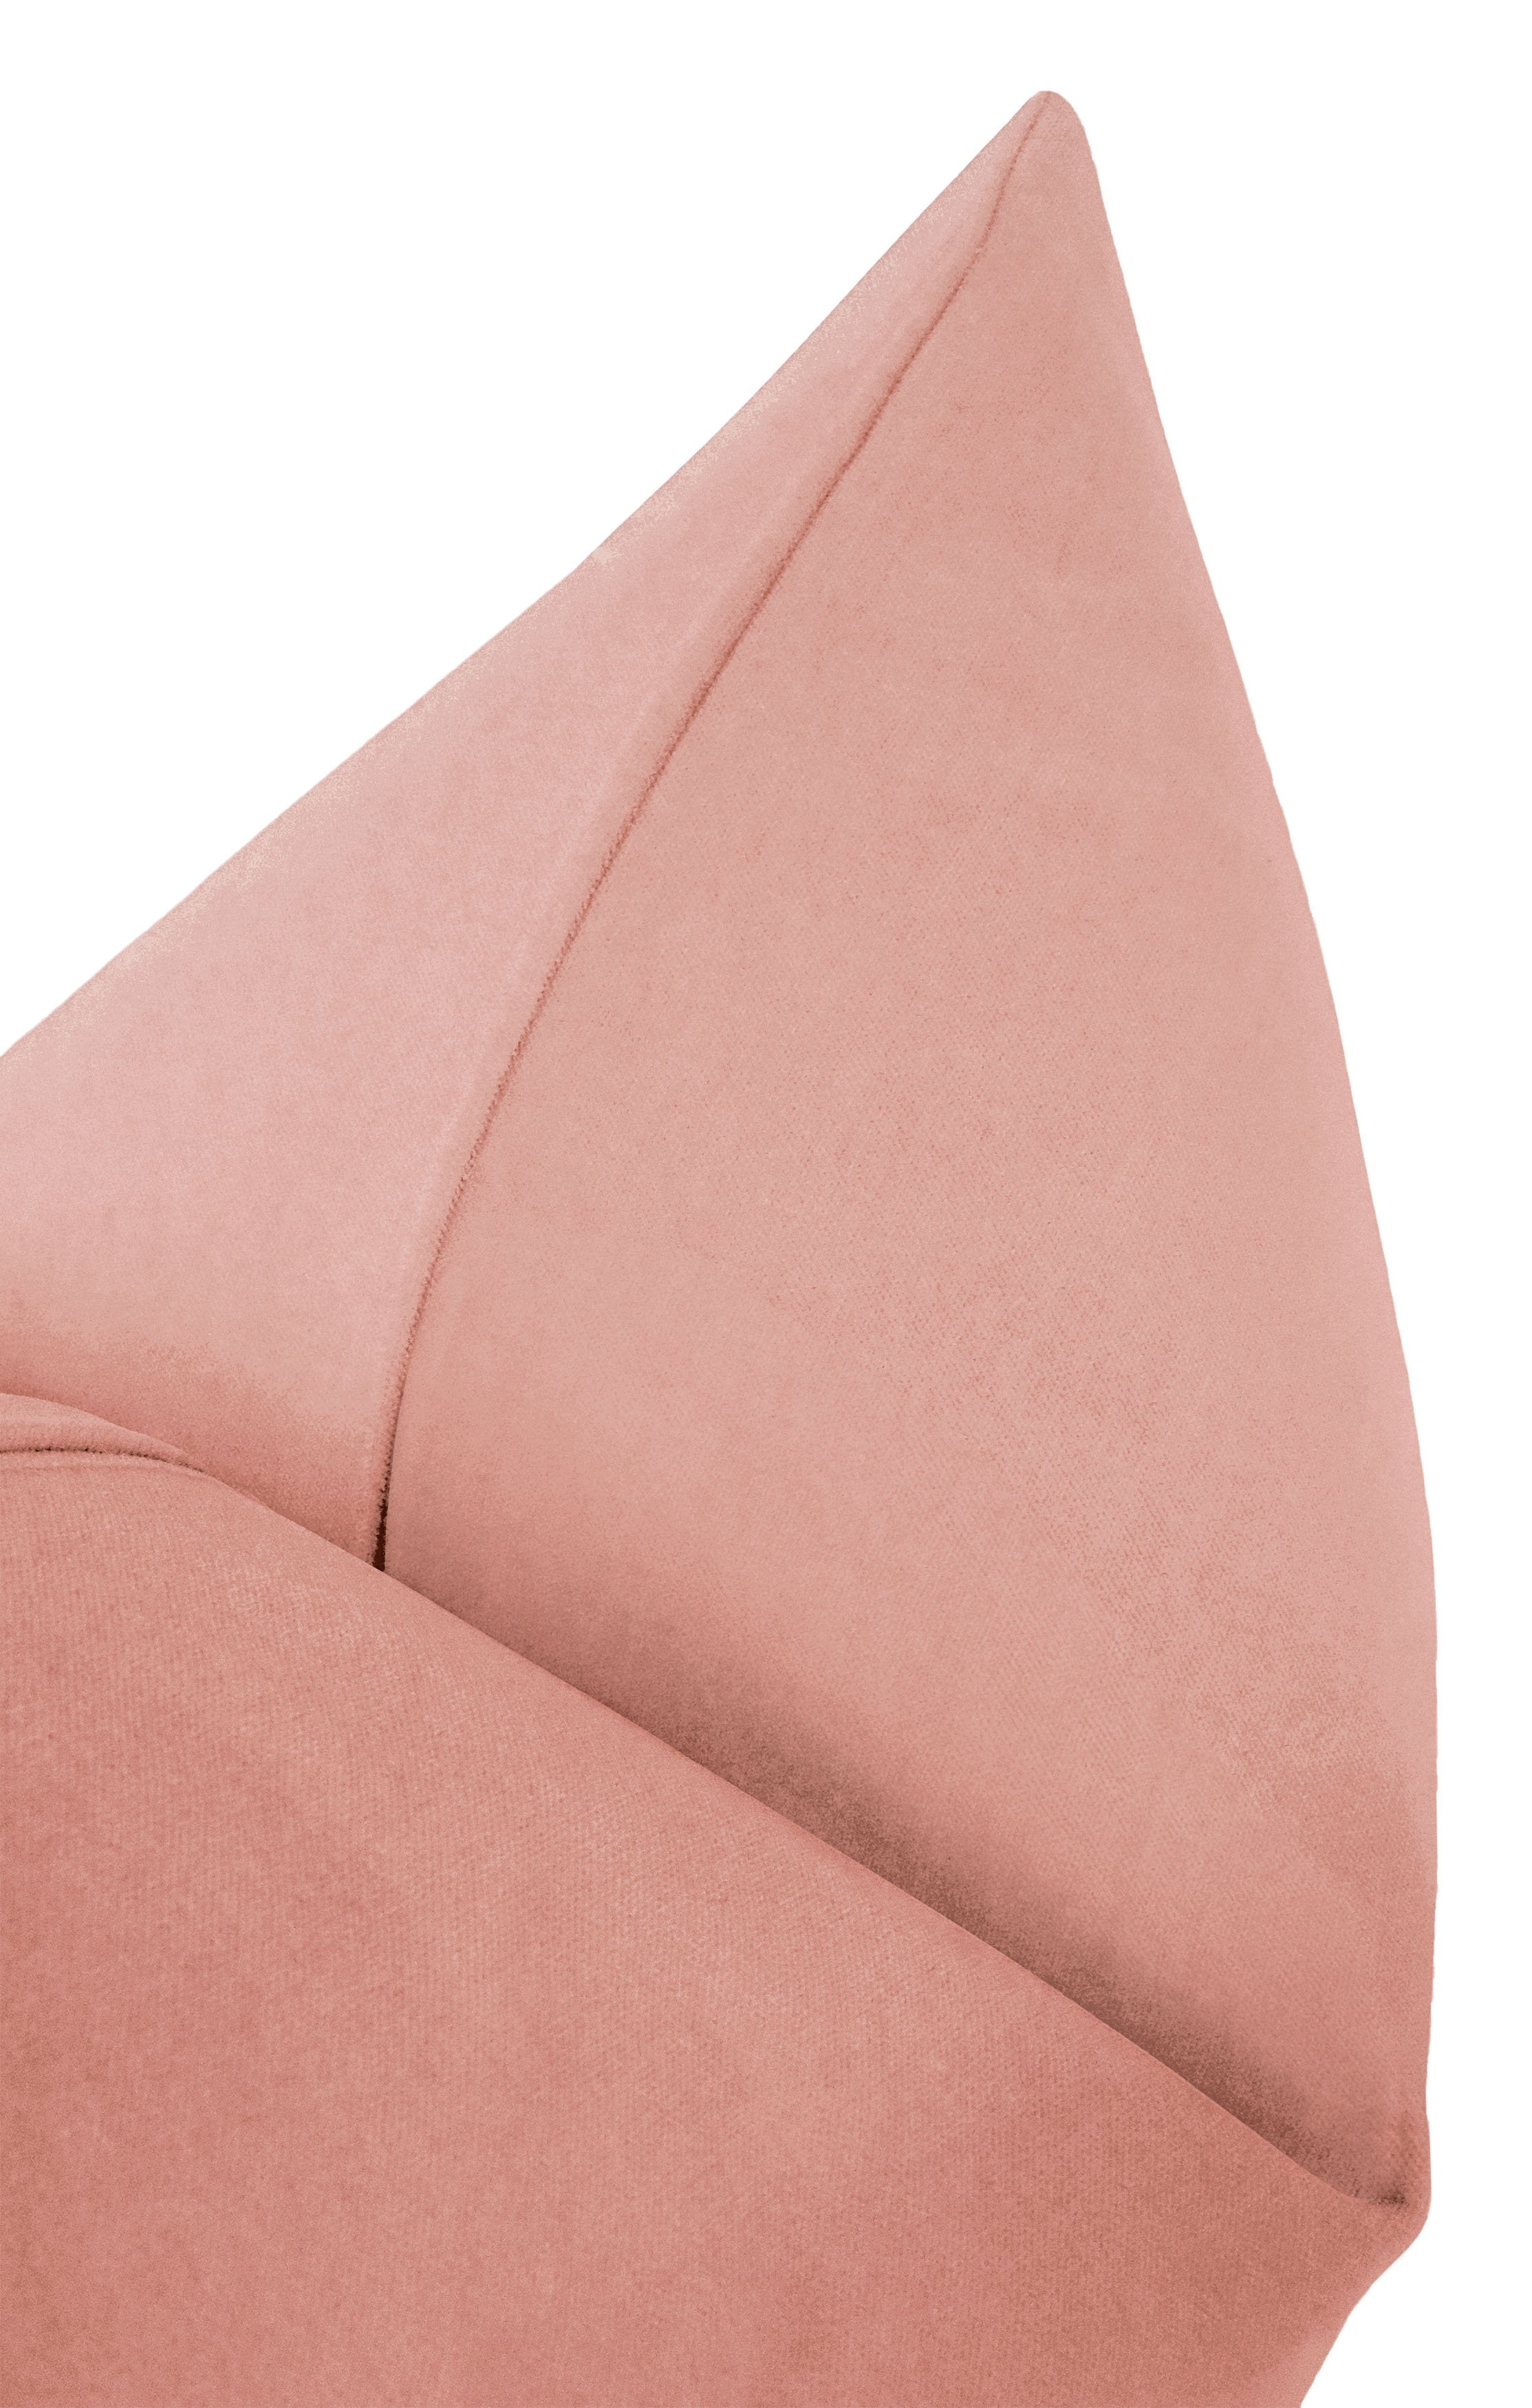 Classic Velvet Pillow Cover, Blush, 18" x 18" - Image 2